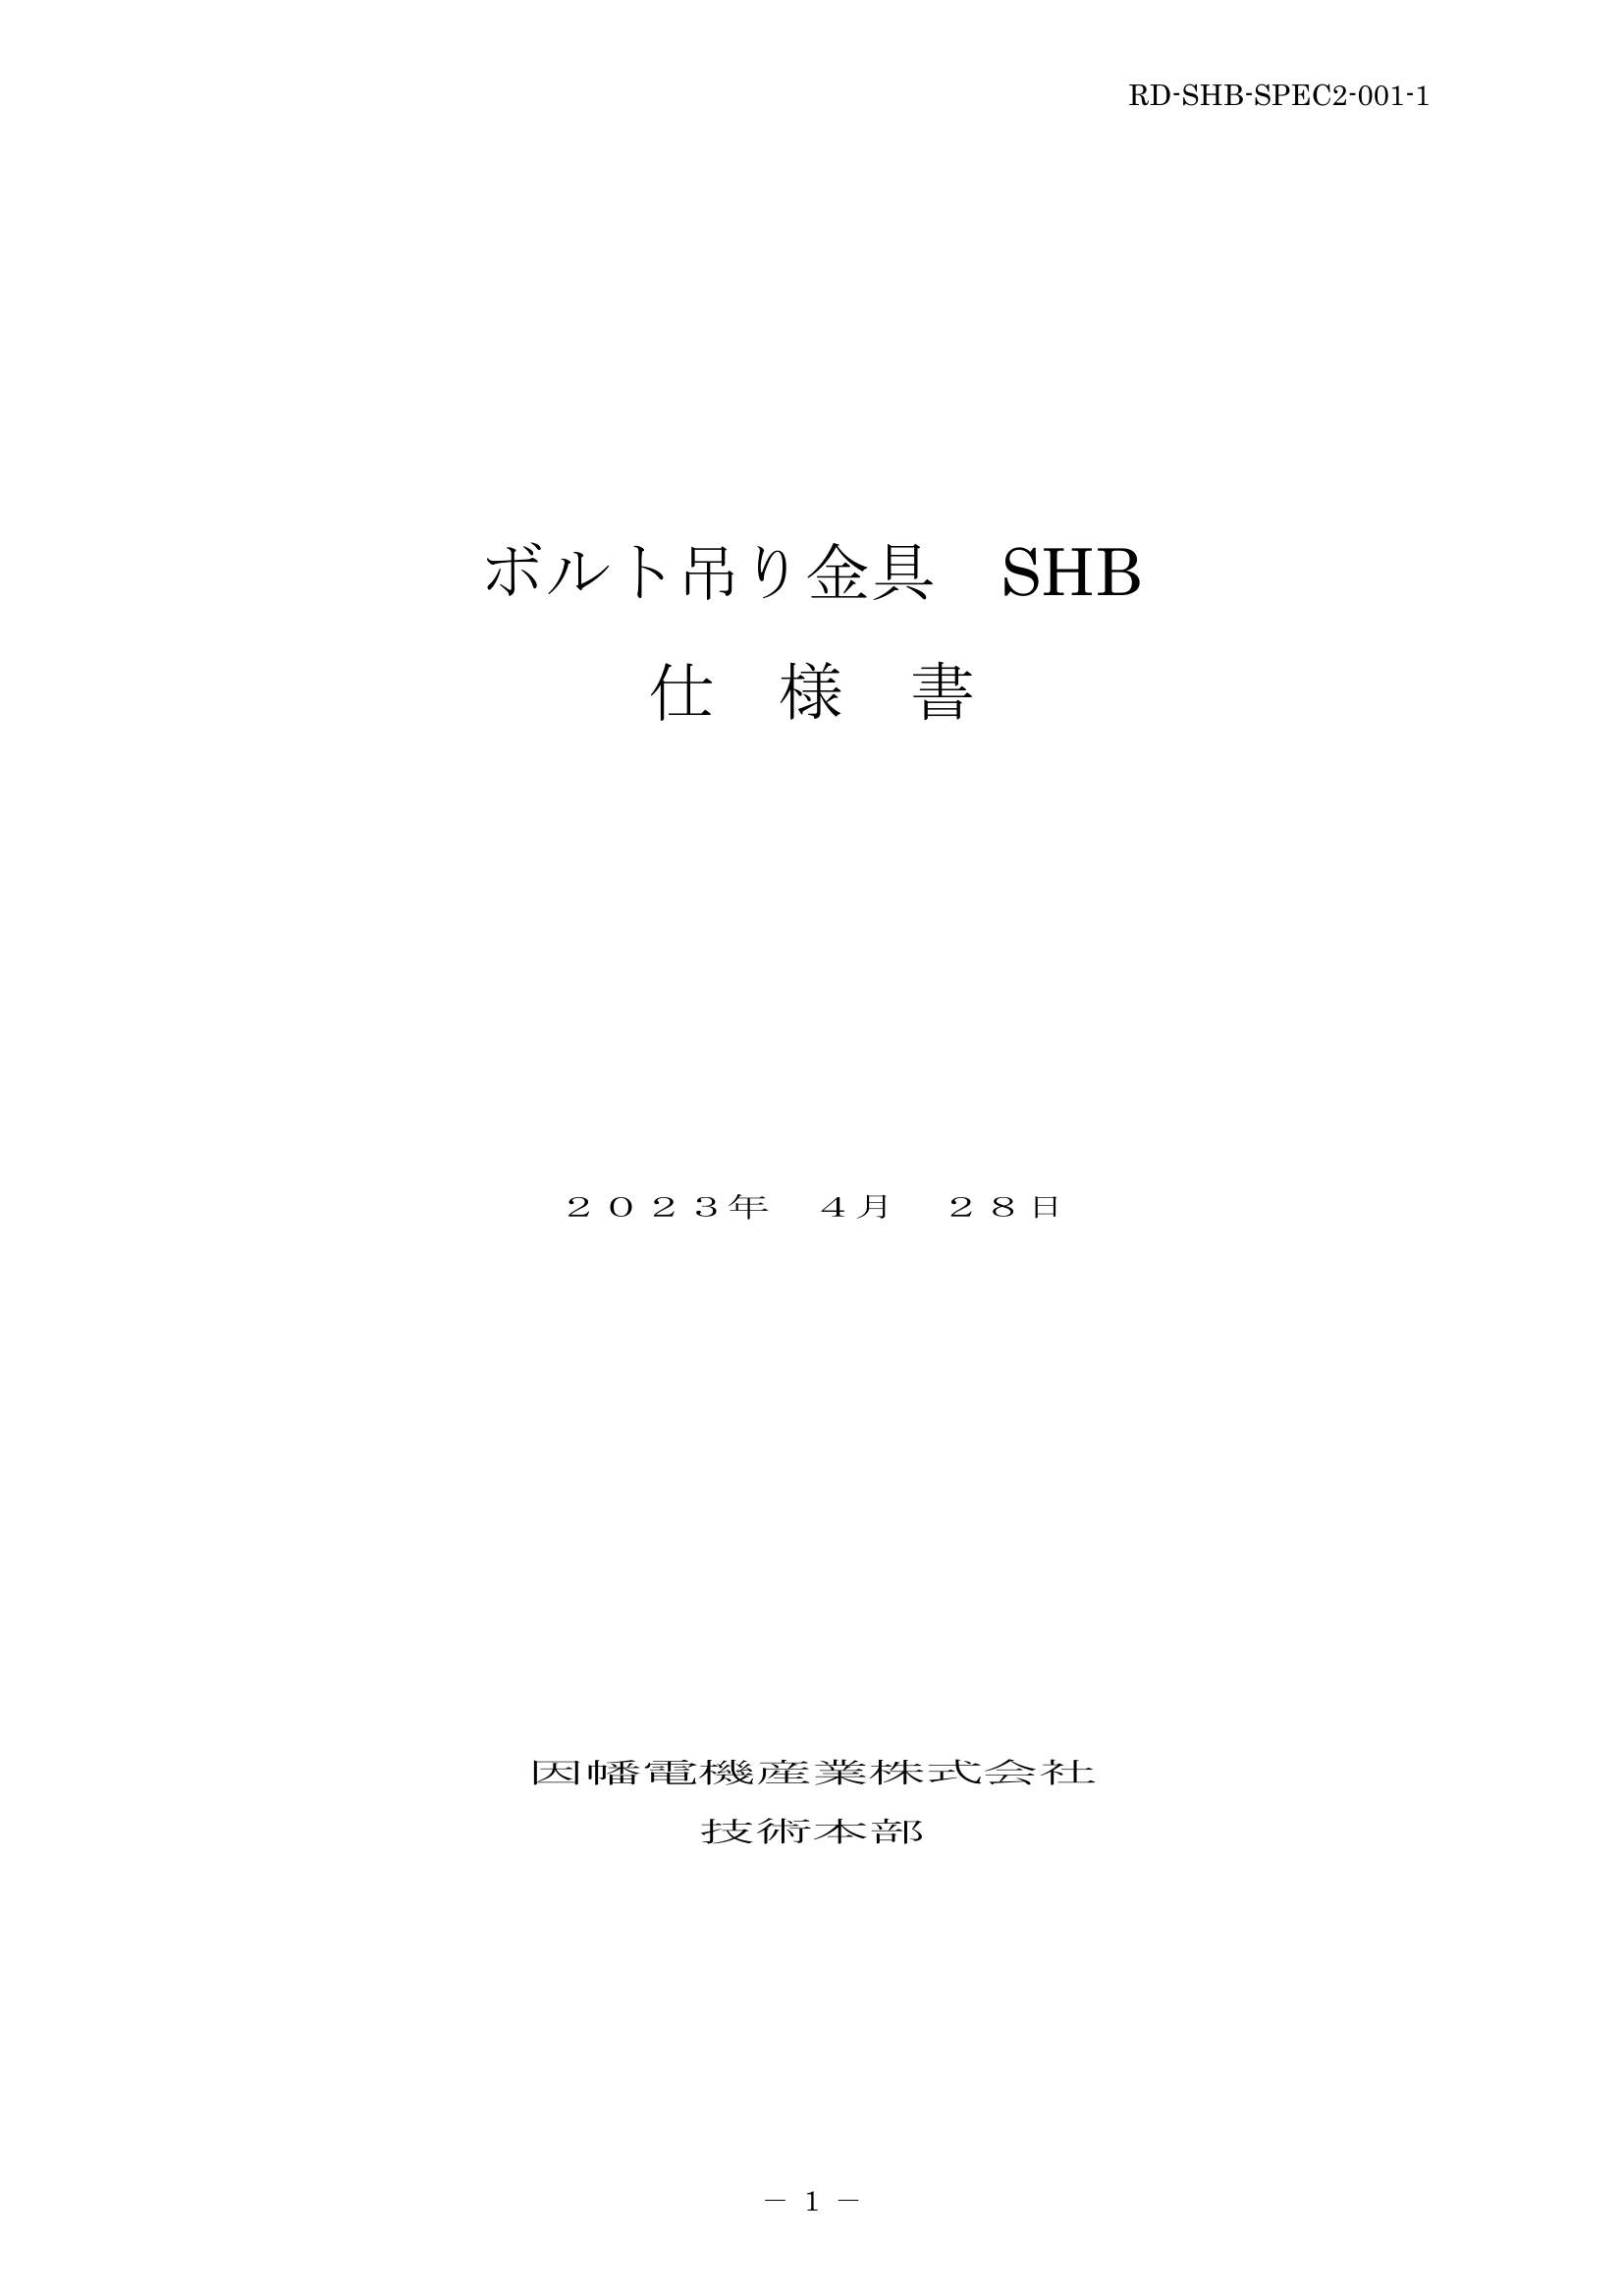 SHB_仕様書_20230428.pdf